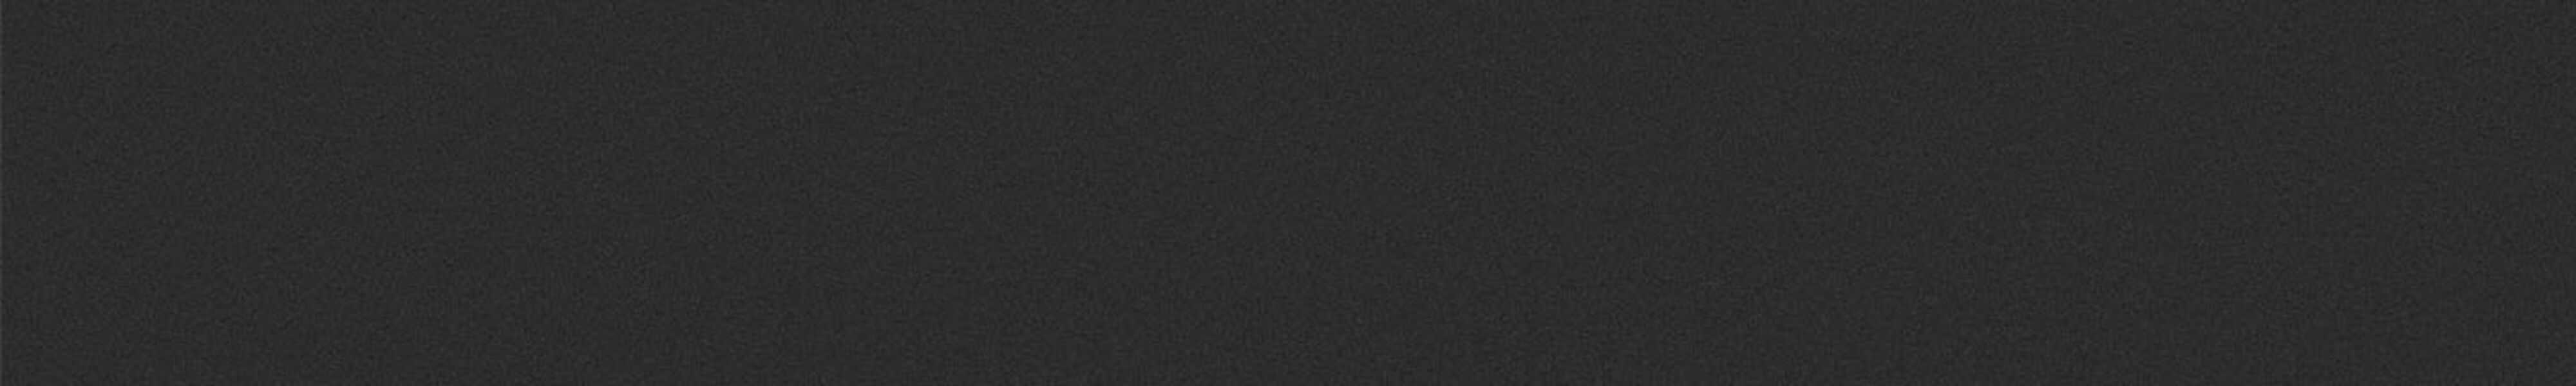 skai® colore classico ULTRA black        0,35 1420